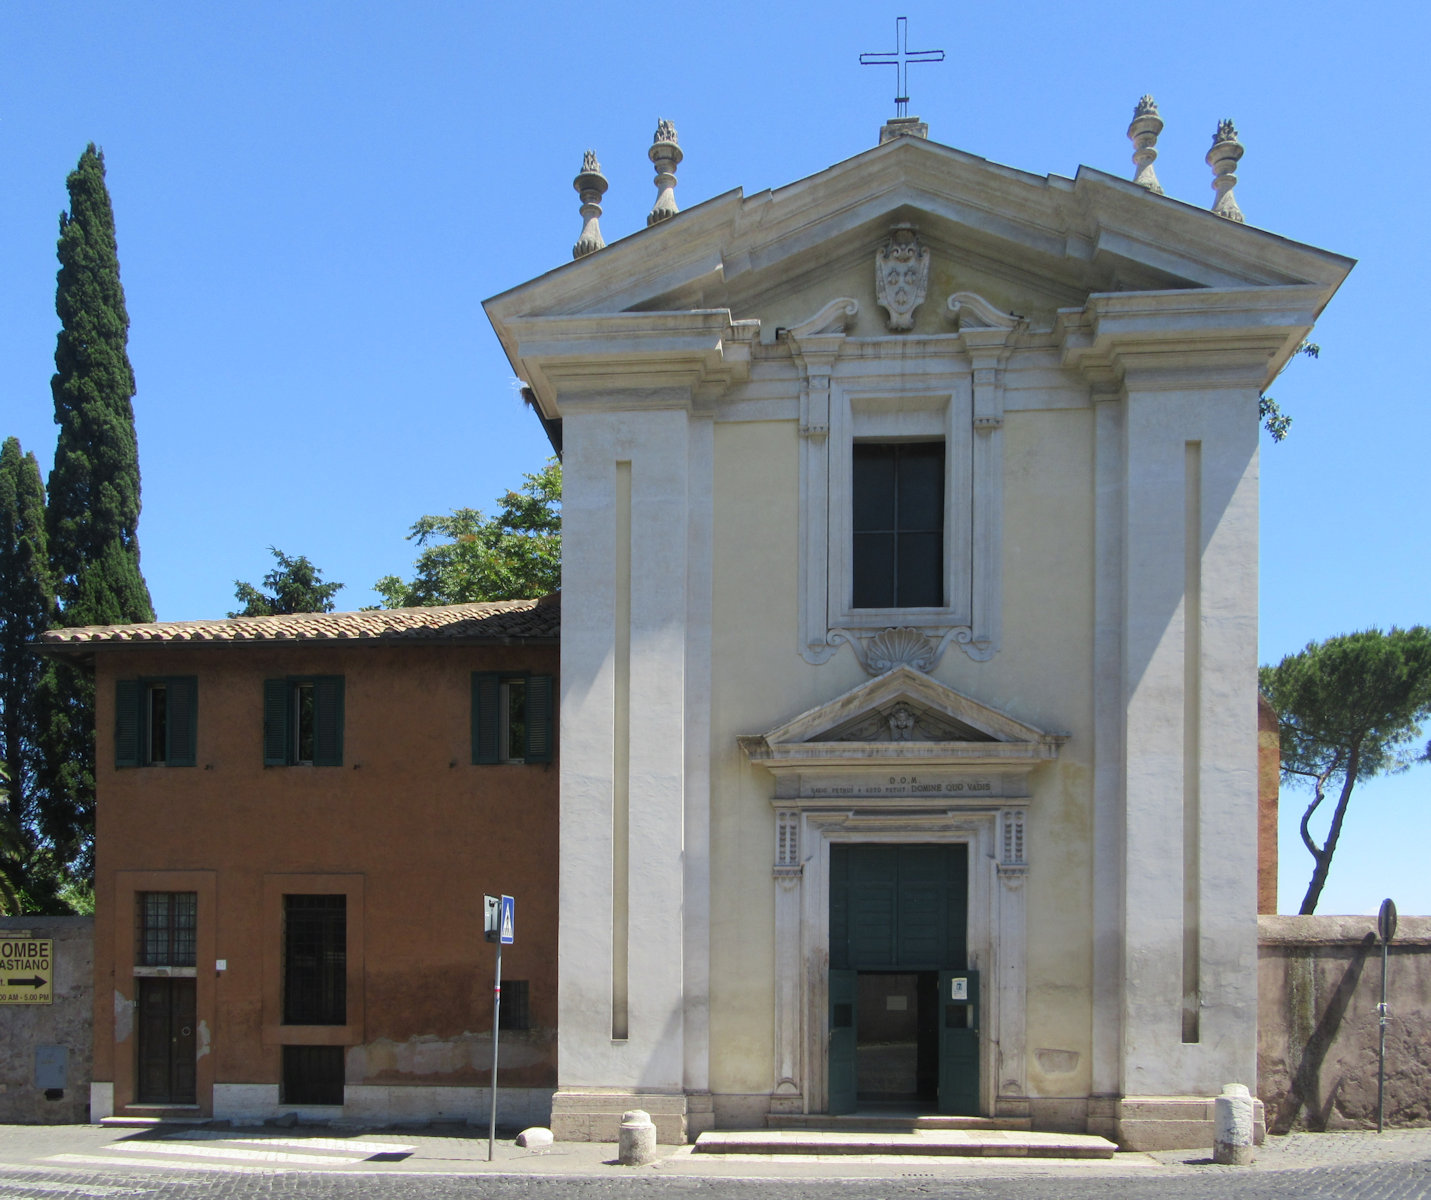 Kirche Santa Maria in Palmis in Rom, im Ursprung aus dem 9. Jahrhundert, 1637 erneuert